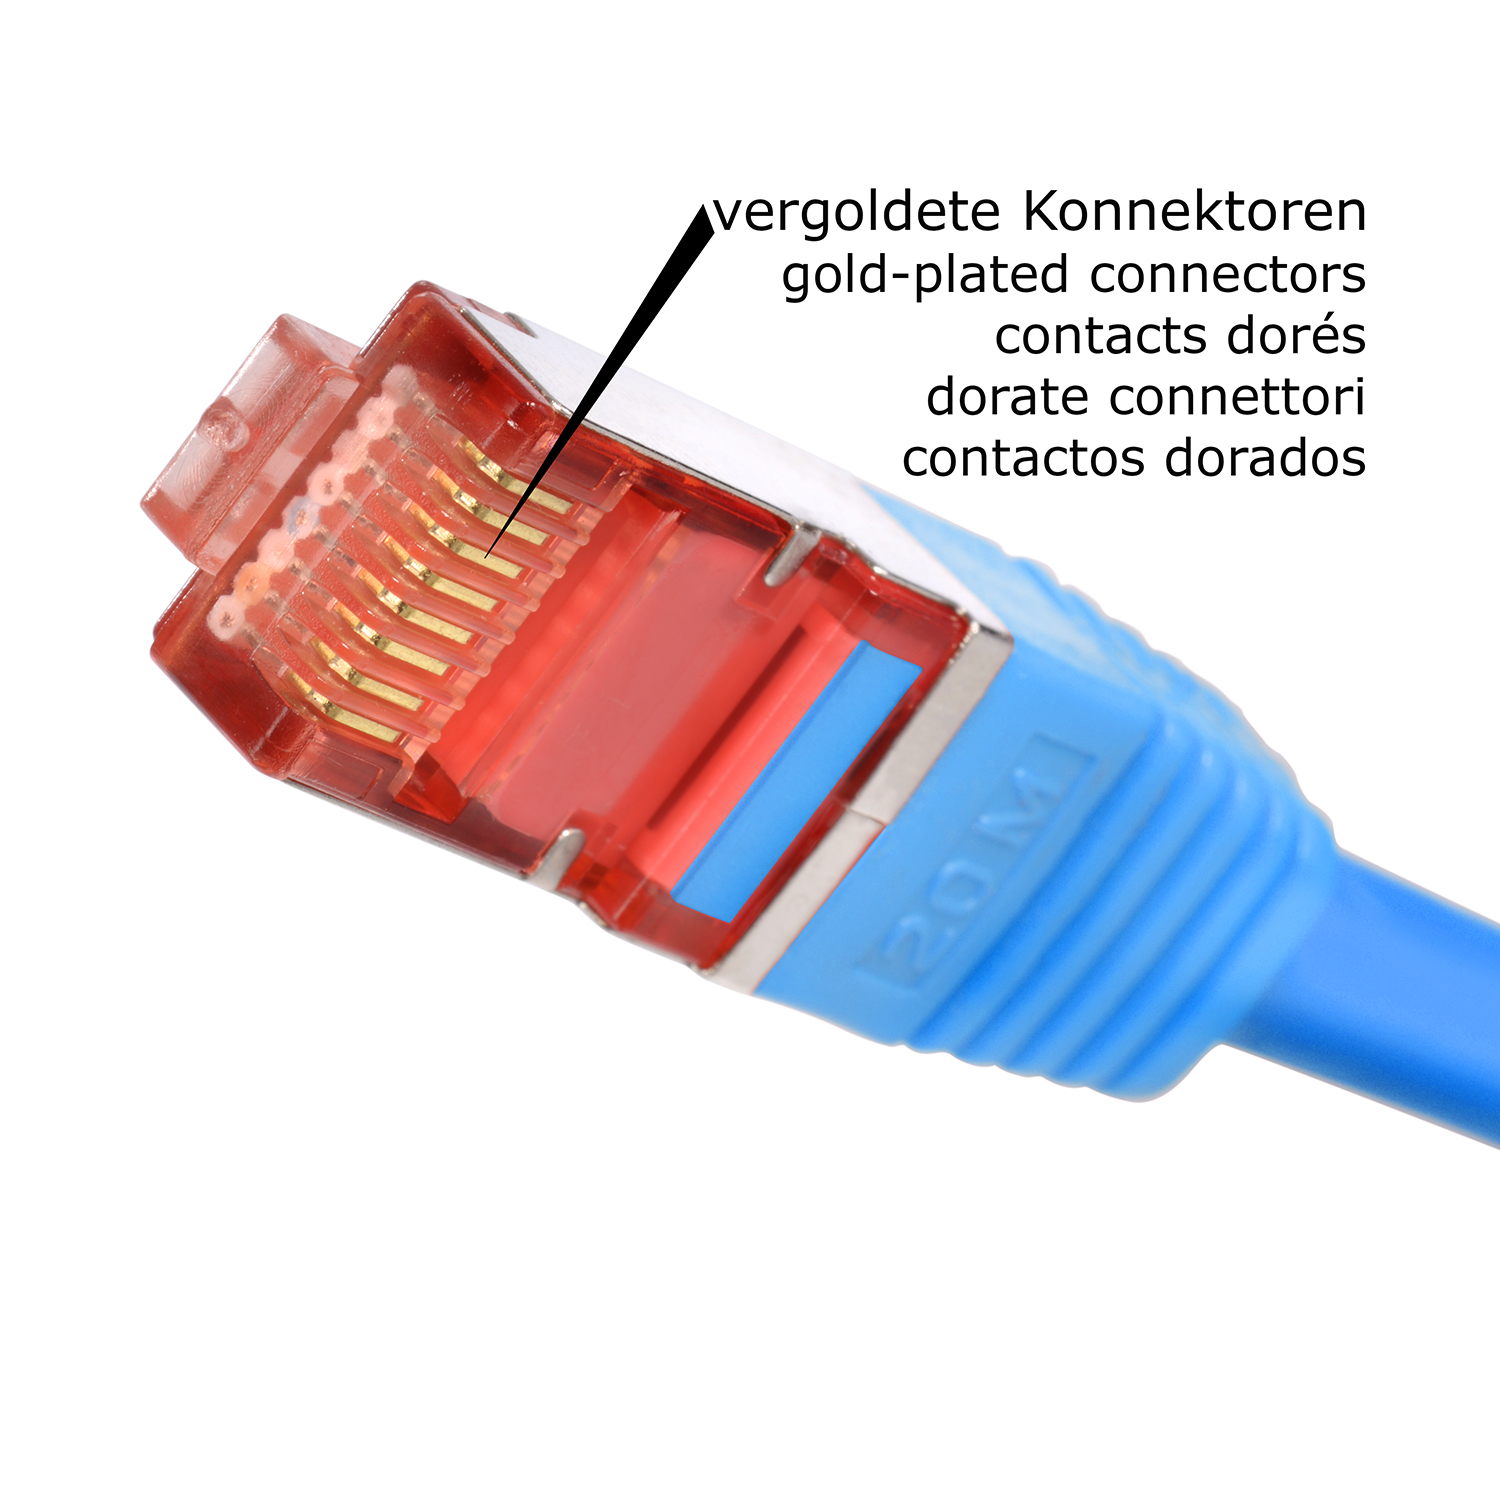 / 5er 3m 3 1000Mbit, Netzwerkkabel, blau, m Patchkabel TPFNET Pack Netzwerkkabel S/FTP